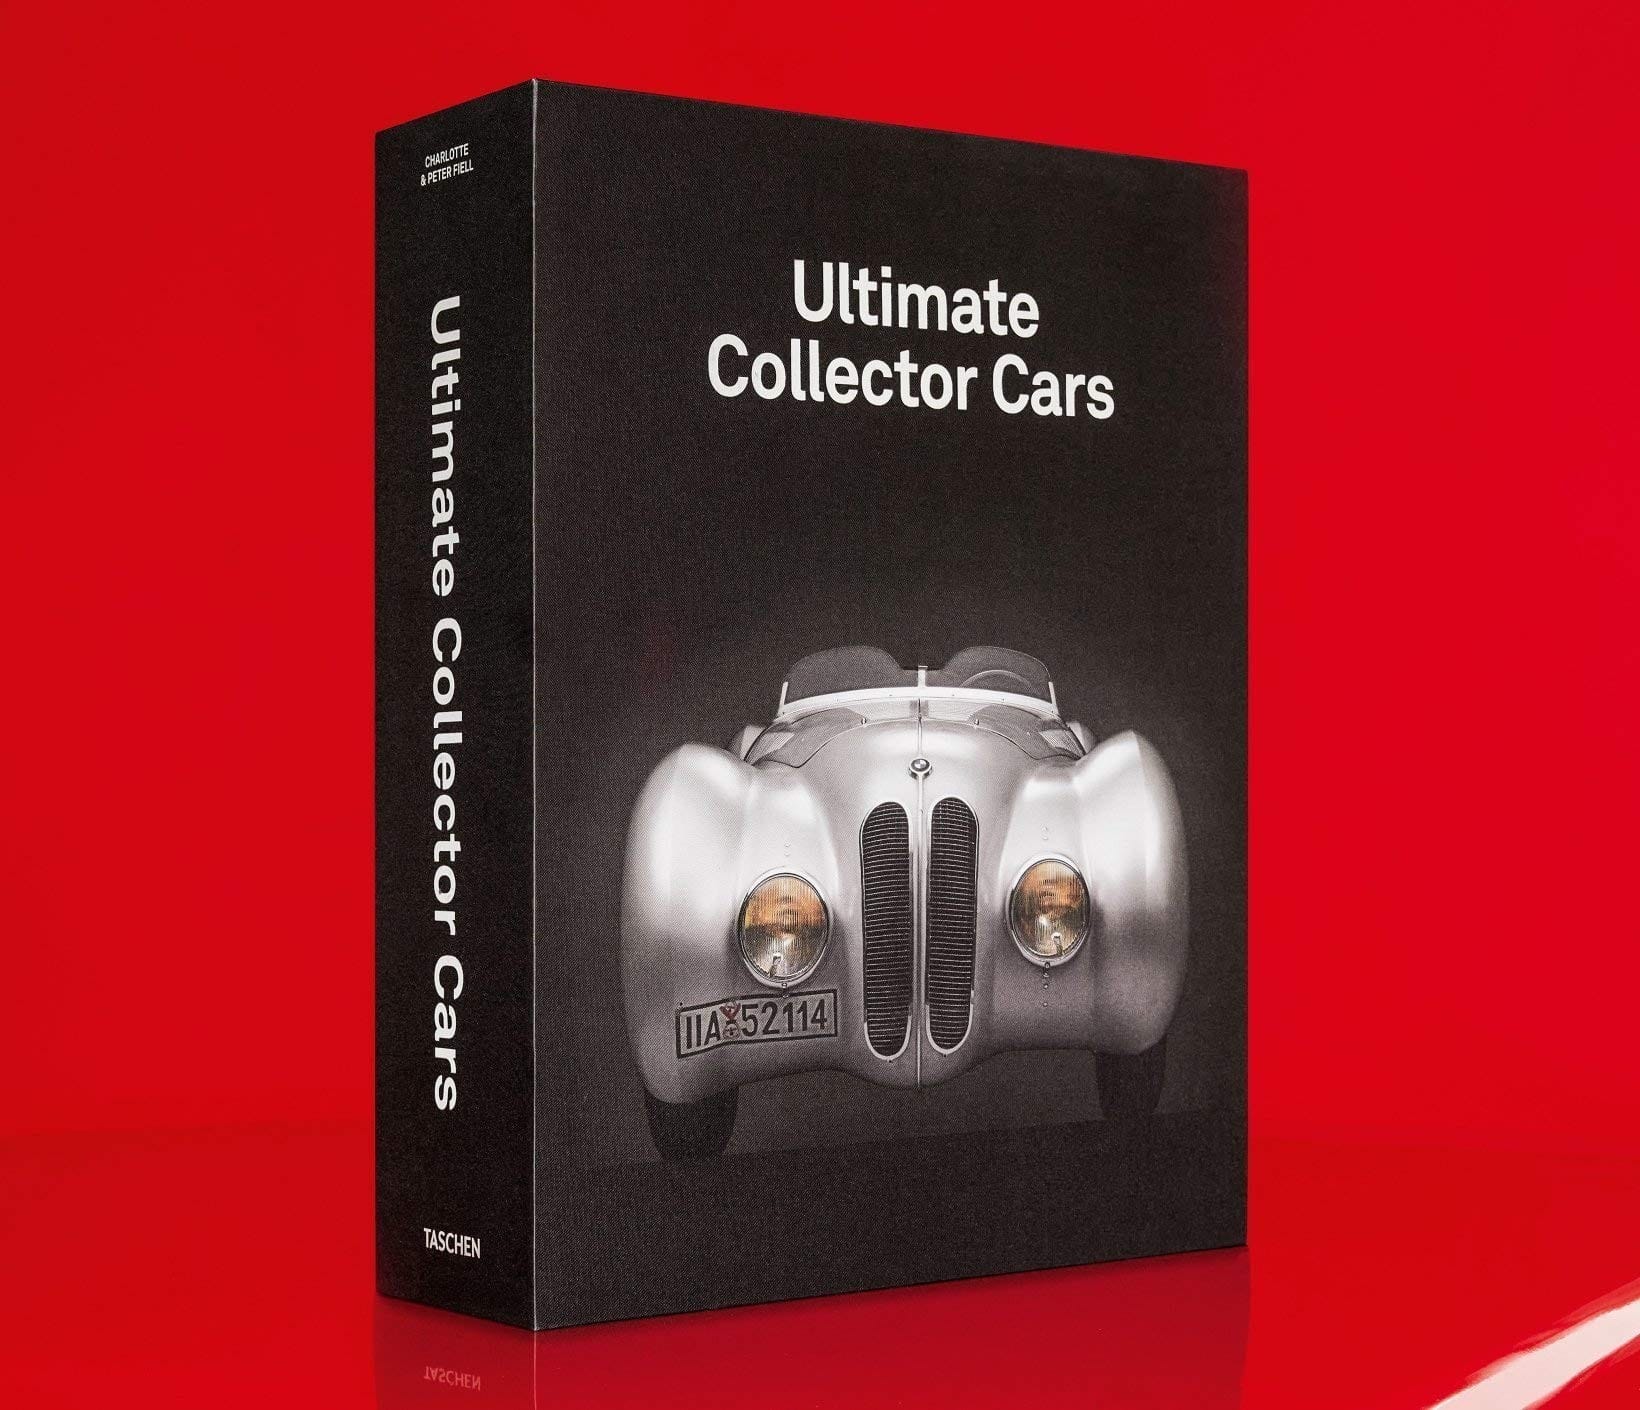 4400-ultimate-collector-cars-71n9oeycupl-jpg-71n9oeycupl